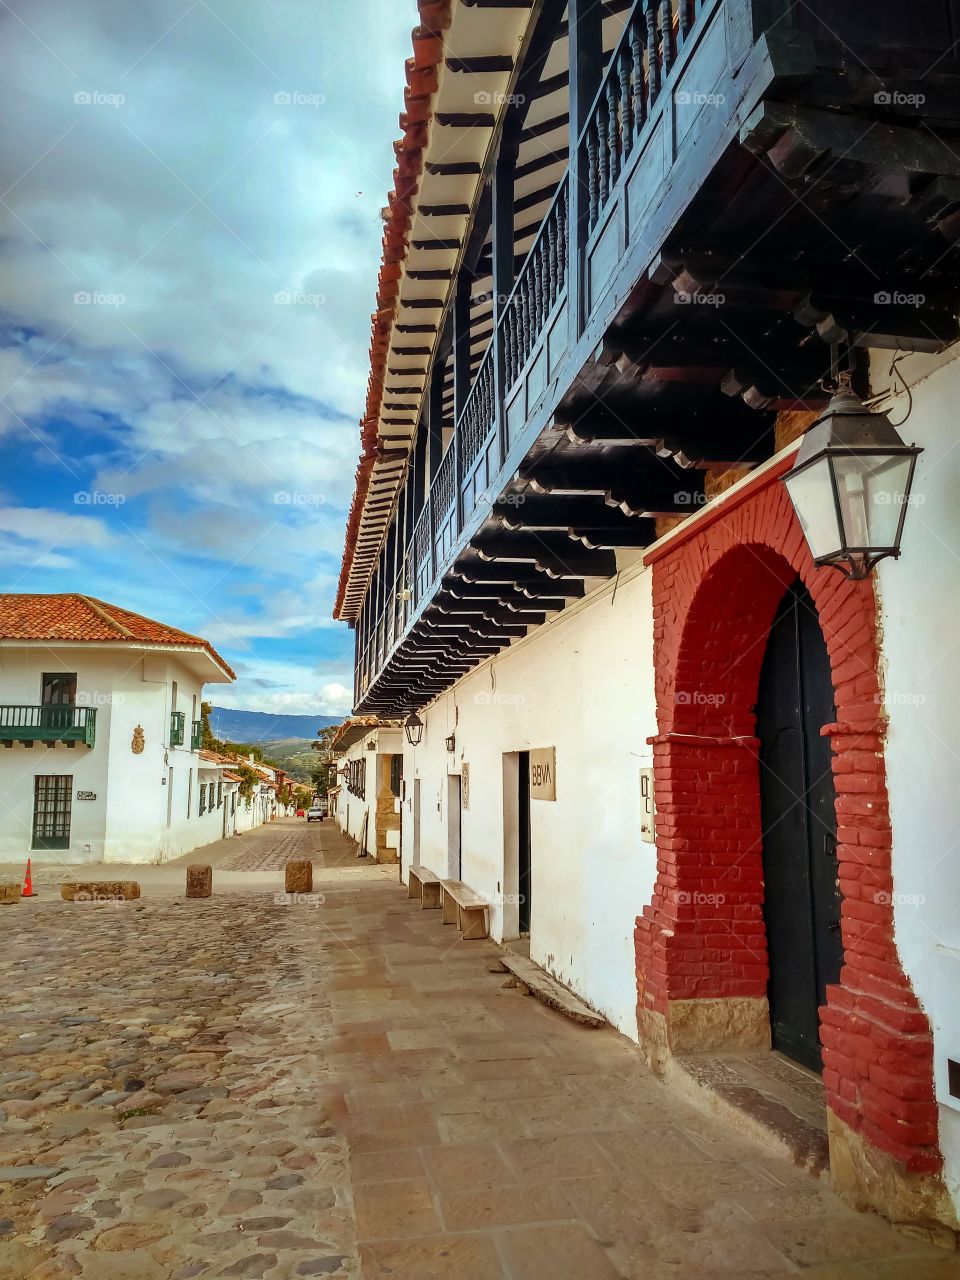 Villa de Leyva, Boyacá, Colombia - Calle con portal farol y balcón. Arquitectura colonial.  Street with lantern portal and balcony.  Colonial architecture. Vertical